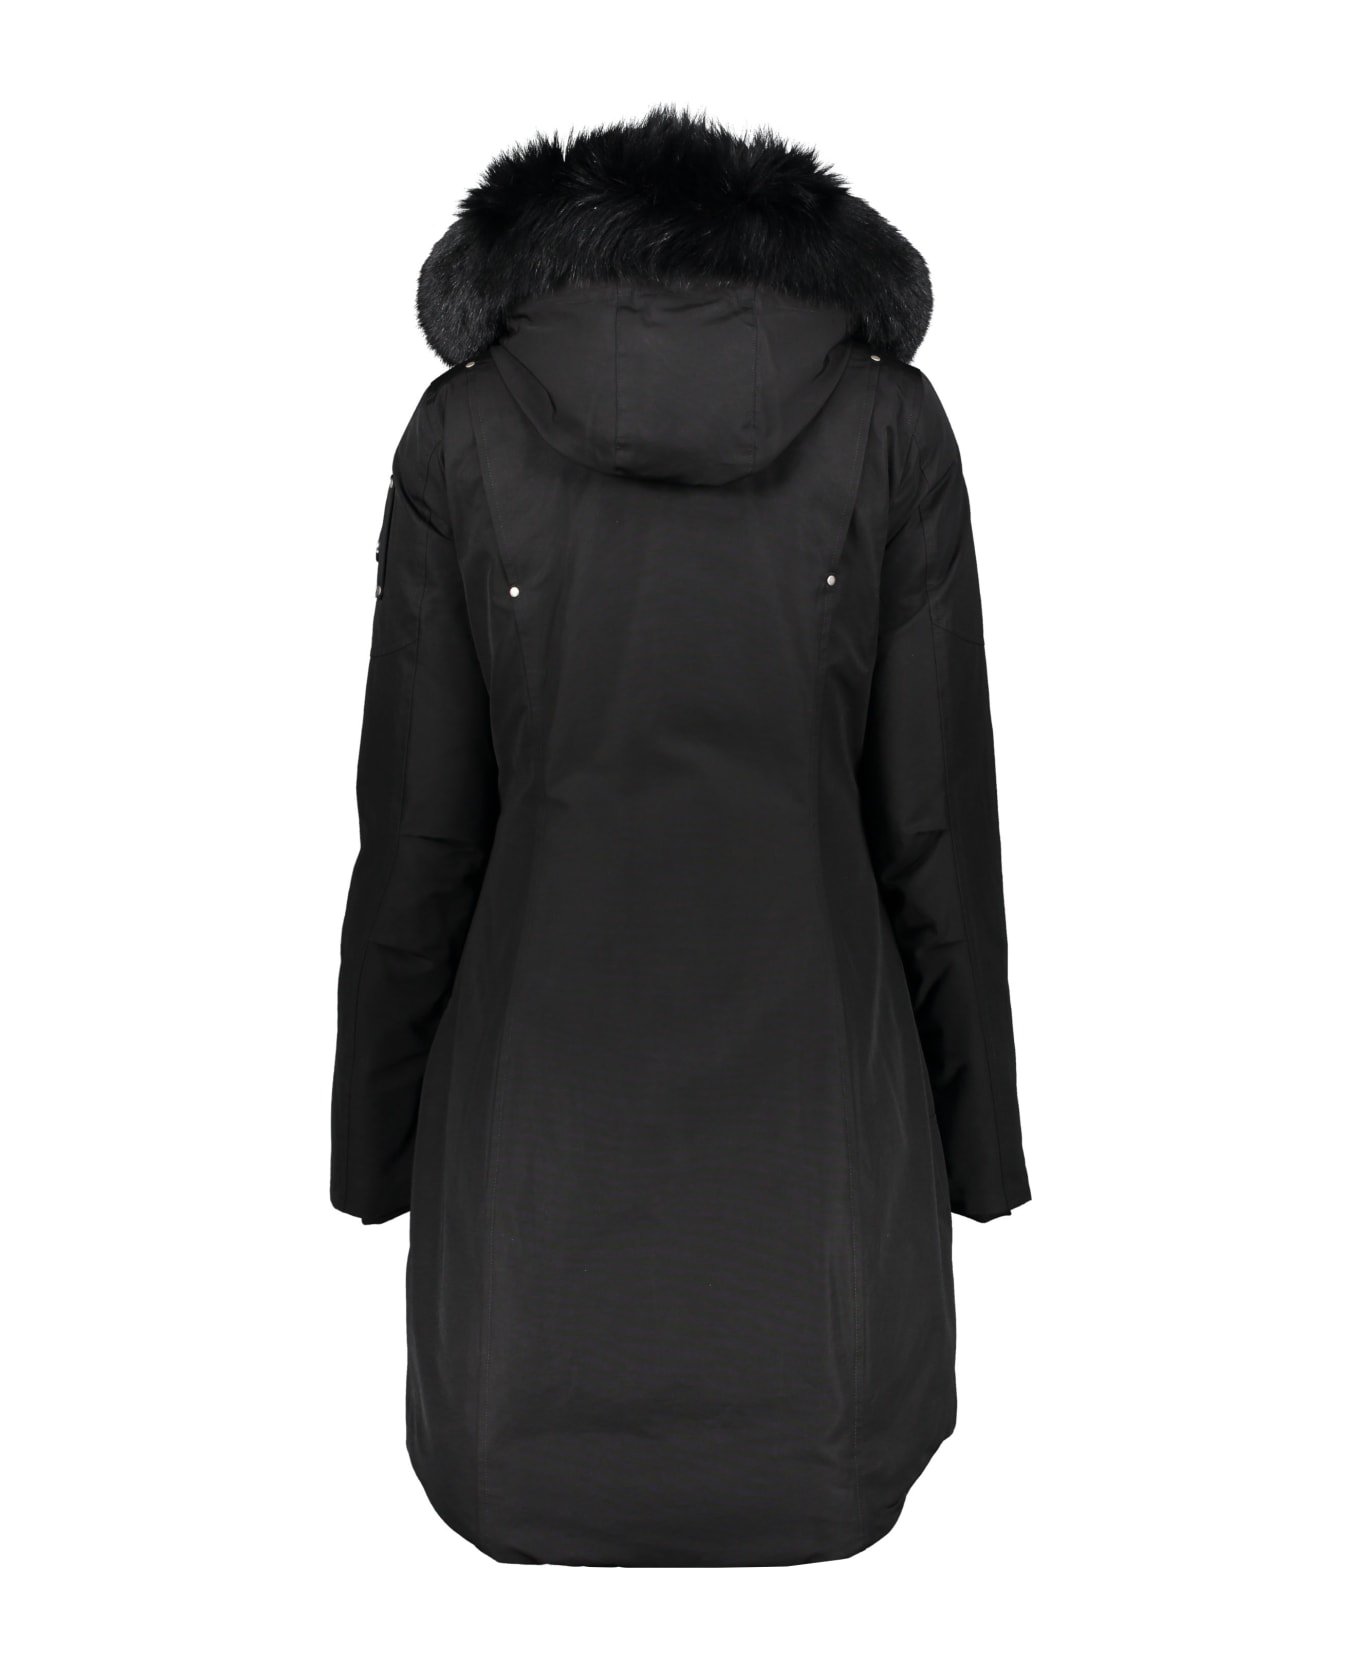 Moose Knuckles Padded Parka With Fur Hood - black コート